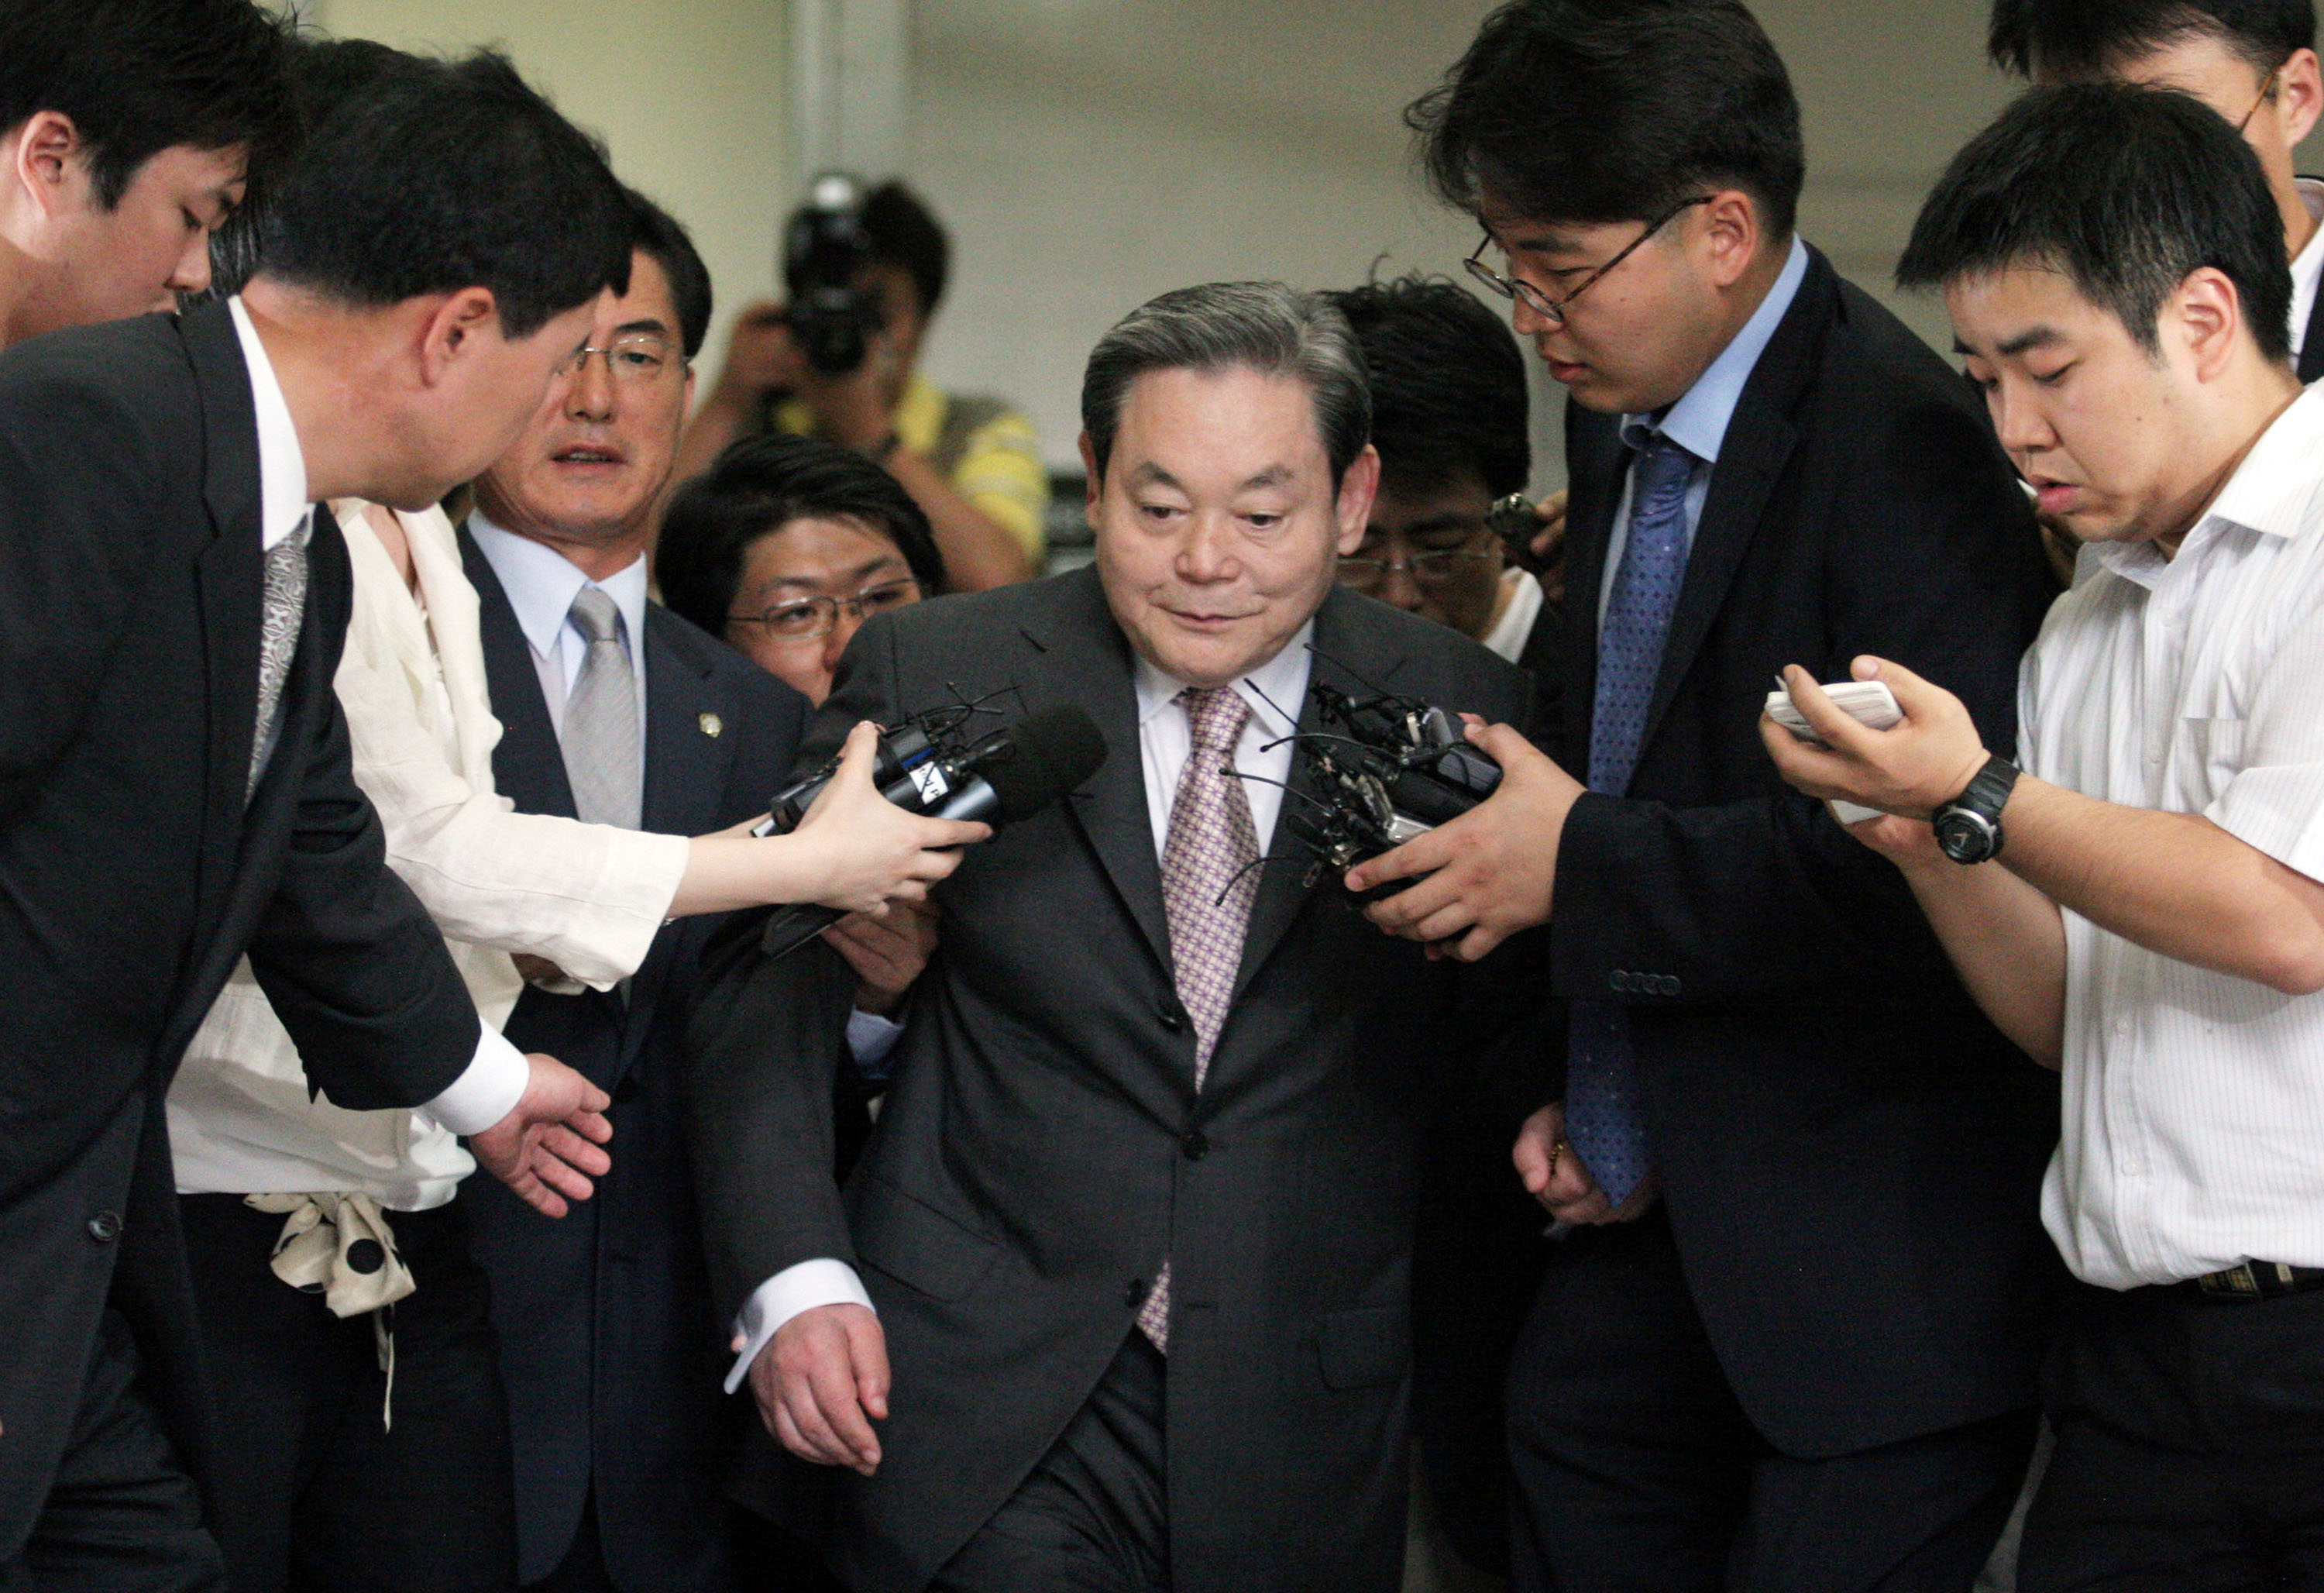 Samsung heir becomes S. Korea's richest stockholder after inheritance